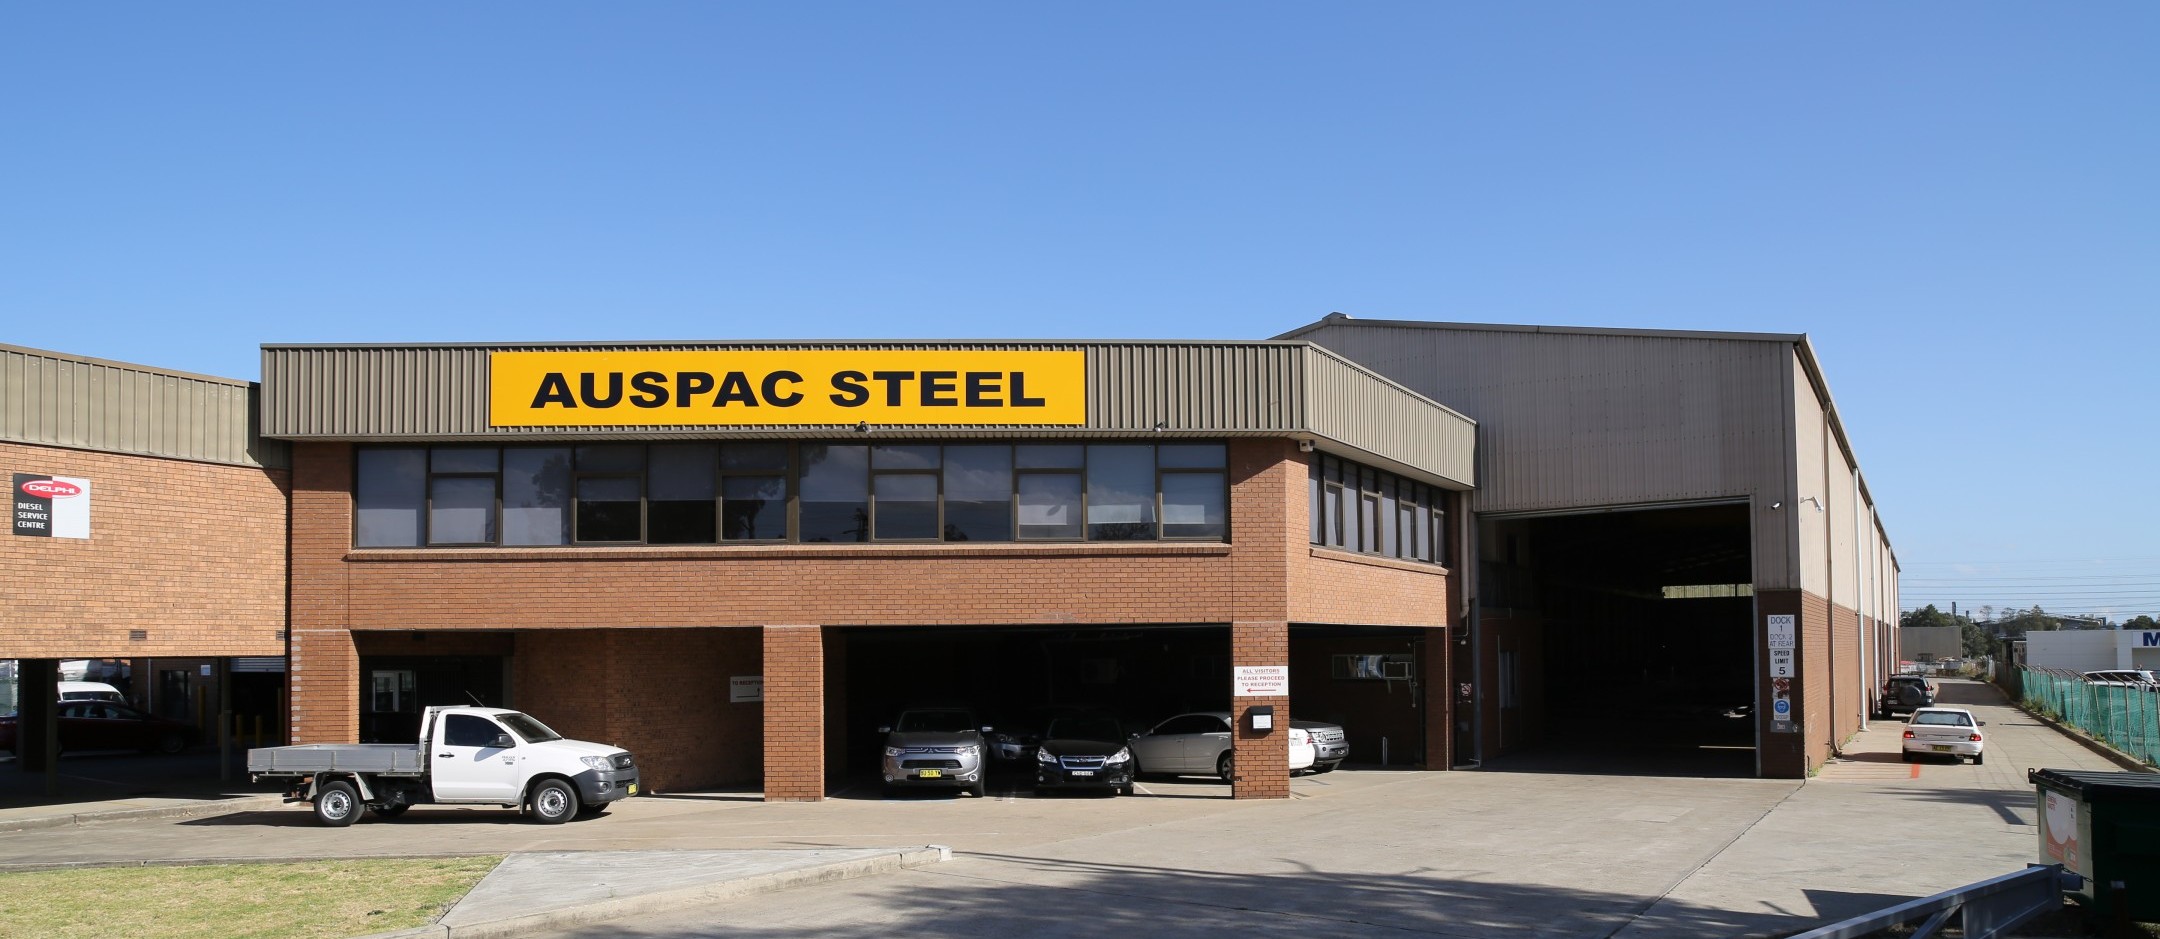 Auspac Steel Building